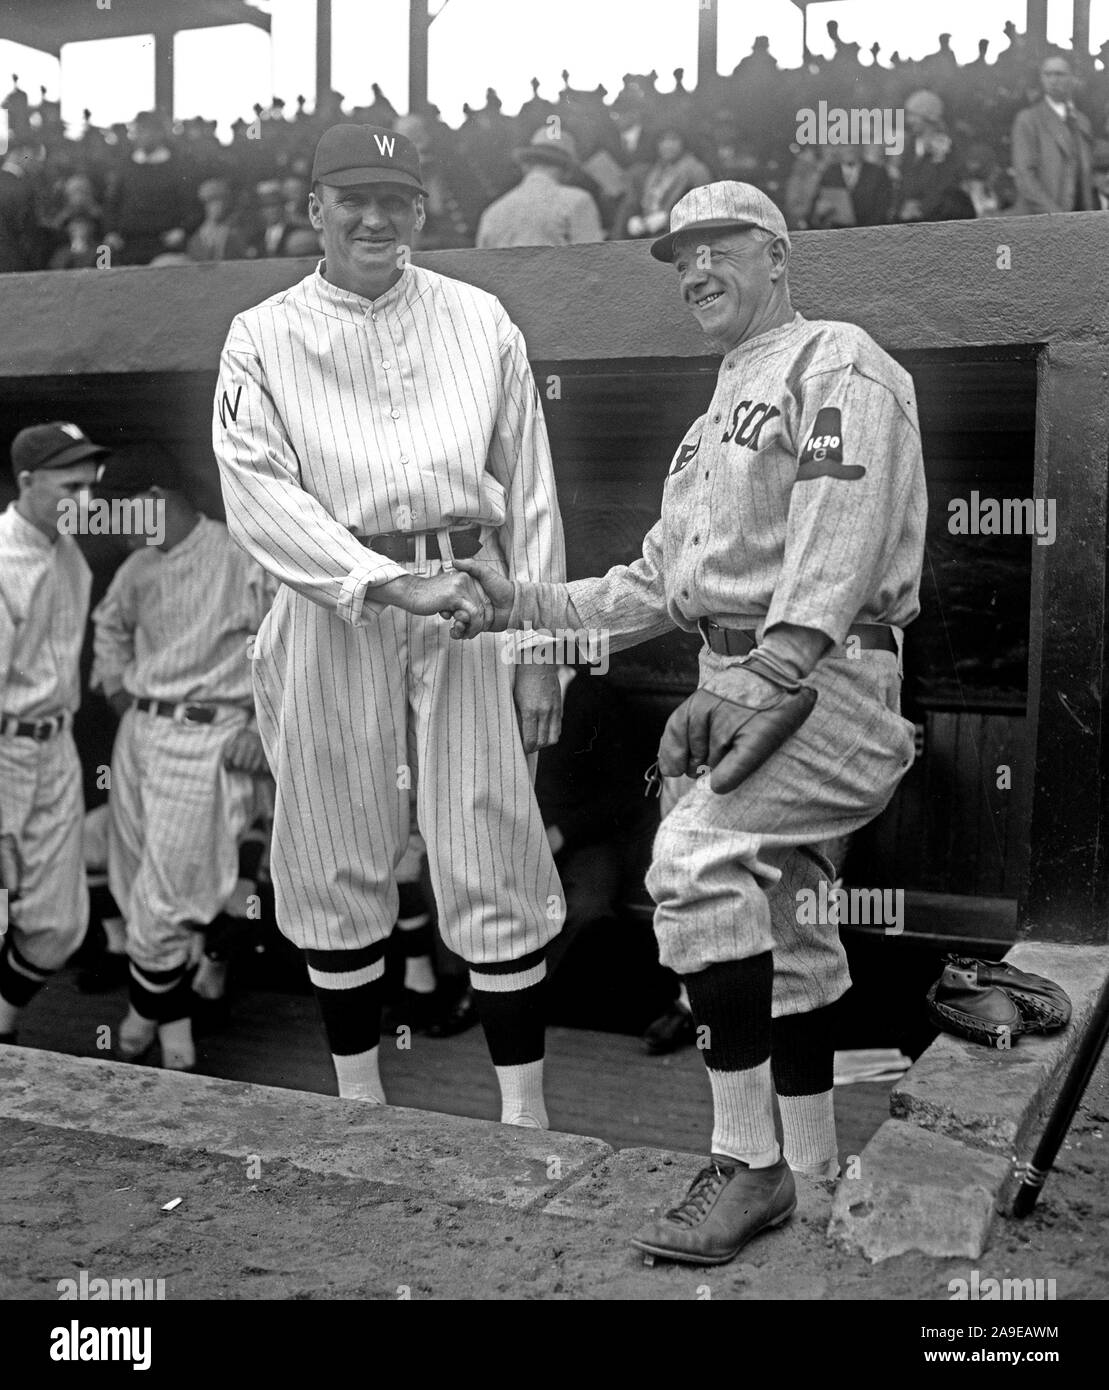 Washington y Boston abre la temporada de béisbol en Washington. Heinie Wagner, gerente de los Boston Red Sox, saluda a Walter Johnson, manager de los Washington Nationals ca. 1930 Foto de stock